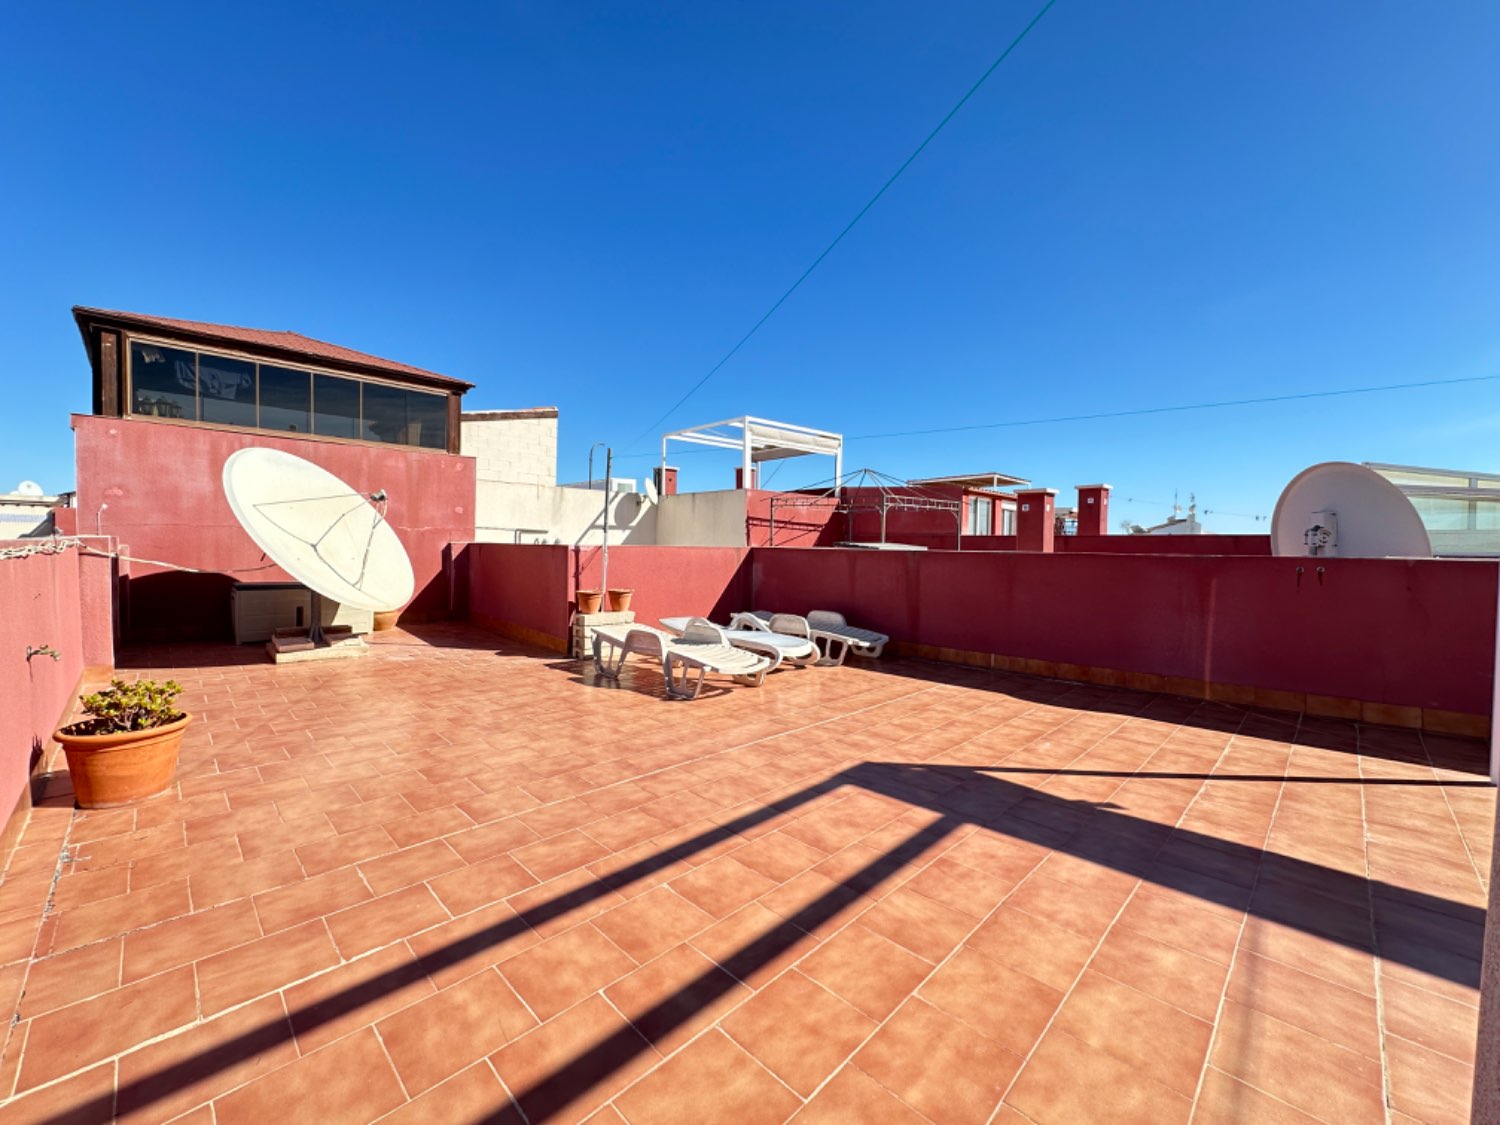 Rohový byt v nejvyšším patře se nachází v Los Altos de Orihuela Costa 2 ložnice v perfektních podmínkách